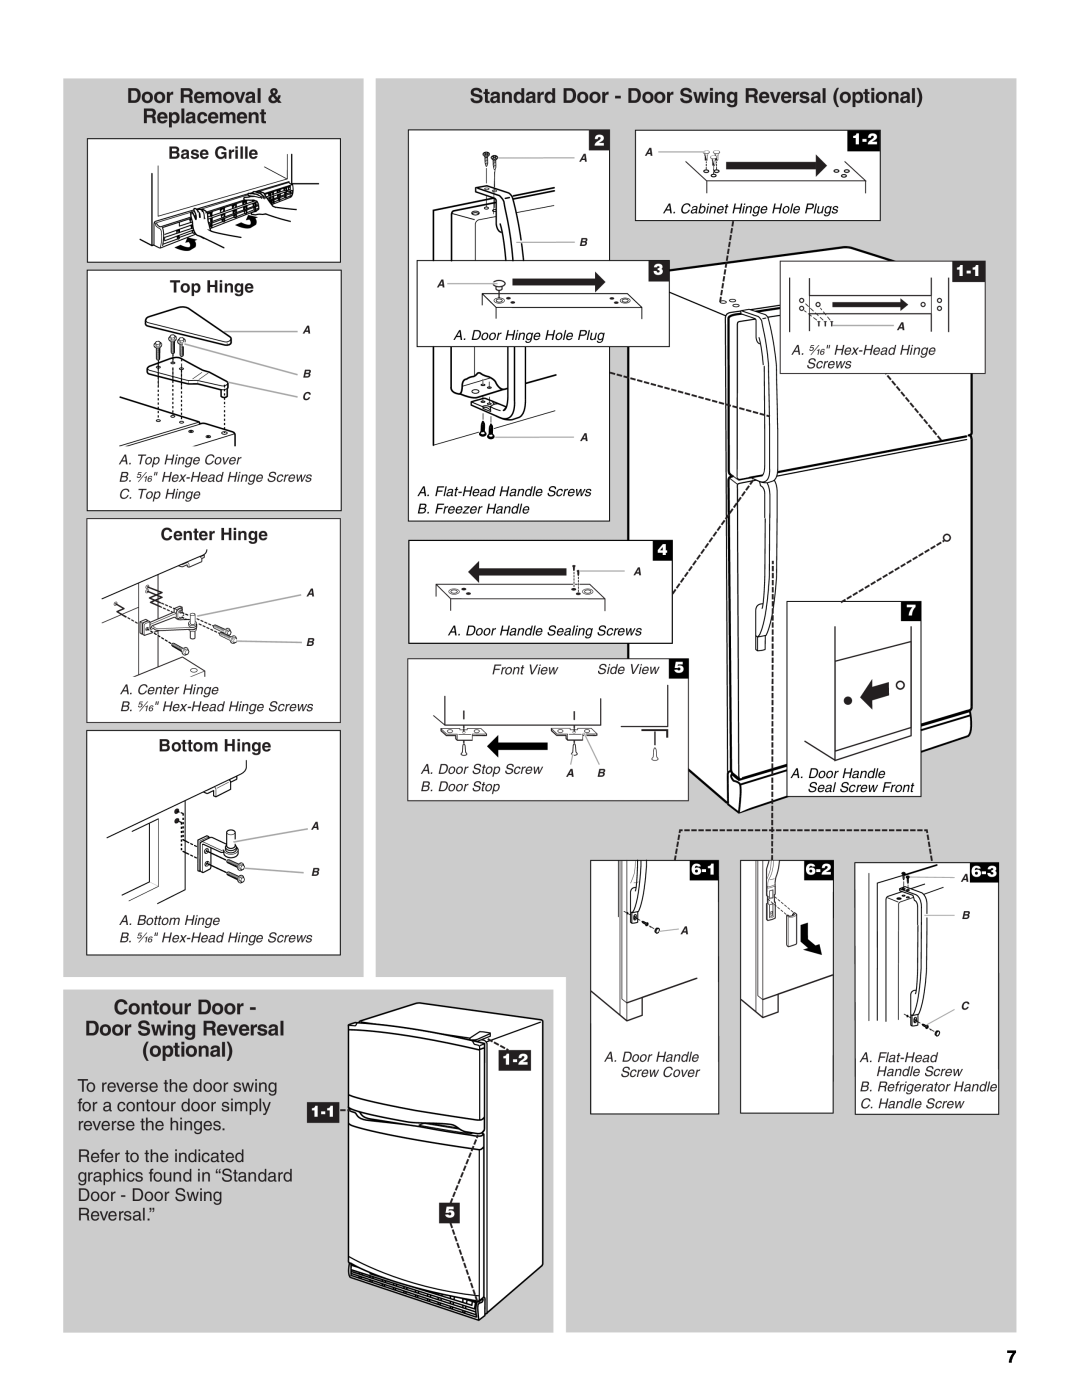 Whirlpool W10208840A Door Removal, Standard Door - Door Swing Reversal optional, Replacement, Contour Door, Top Hinge 